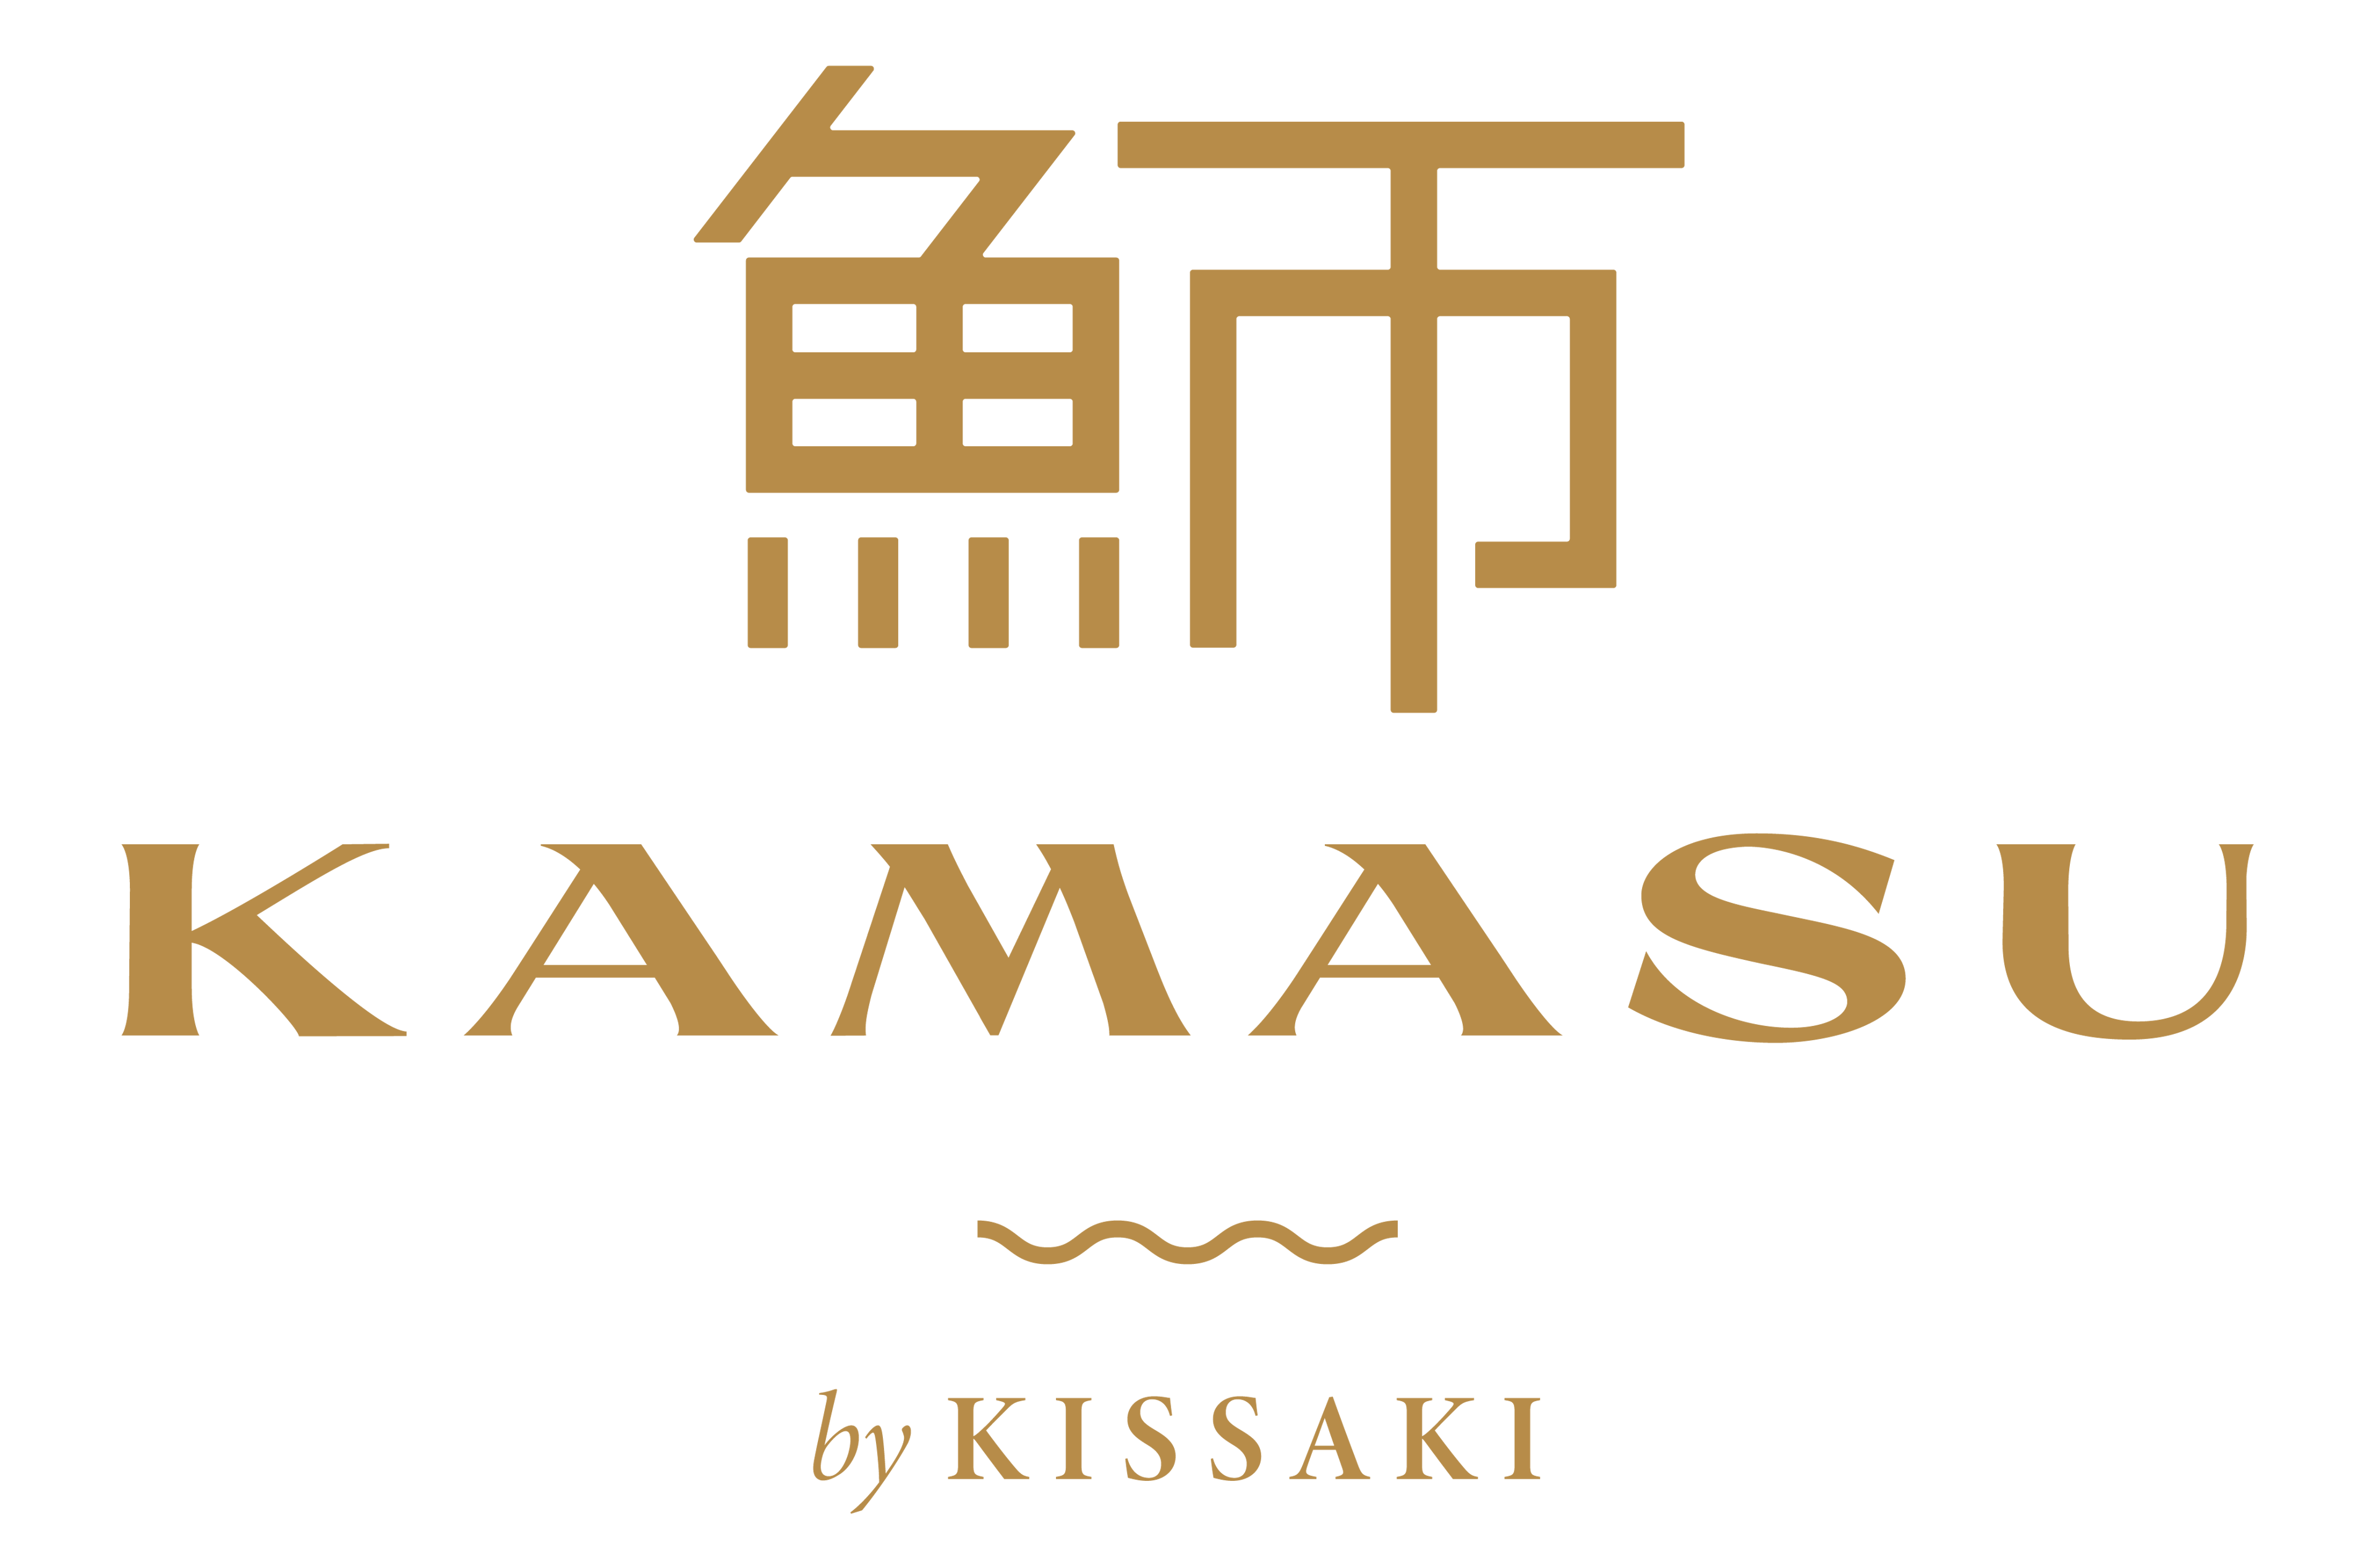 Kamasu-logo-08.png